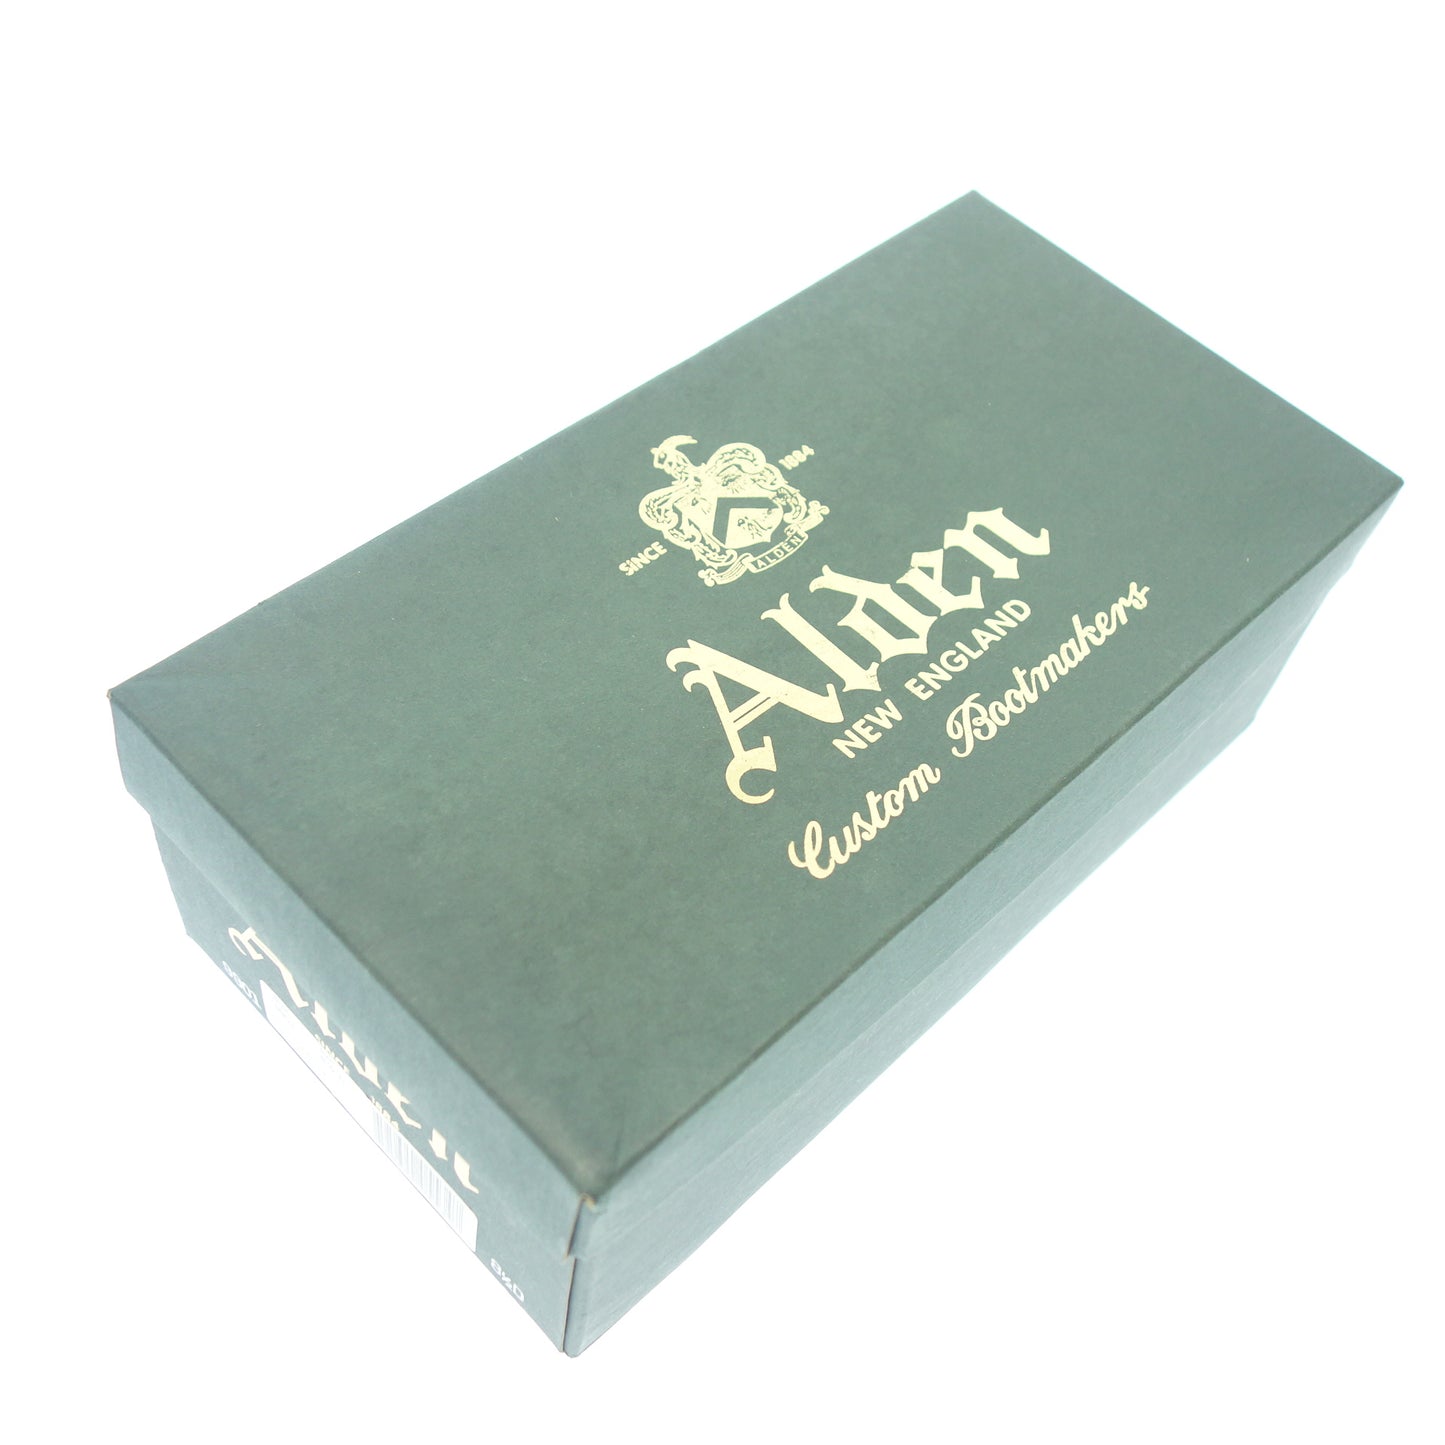 【ALDEN】オールデン 9901 プレーントゥ コードバン ブラック サイズ US8.5D バリーラストラスト